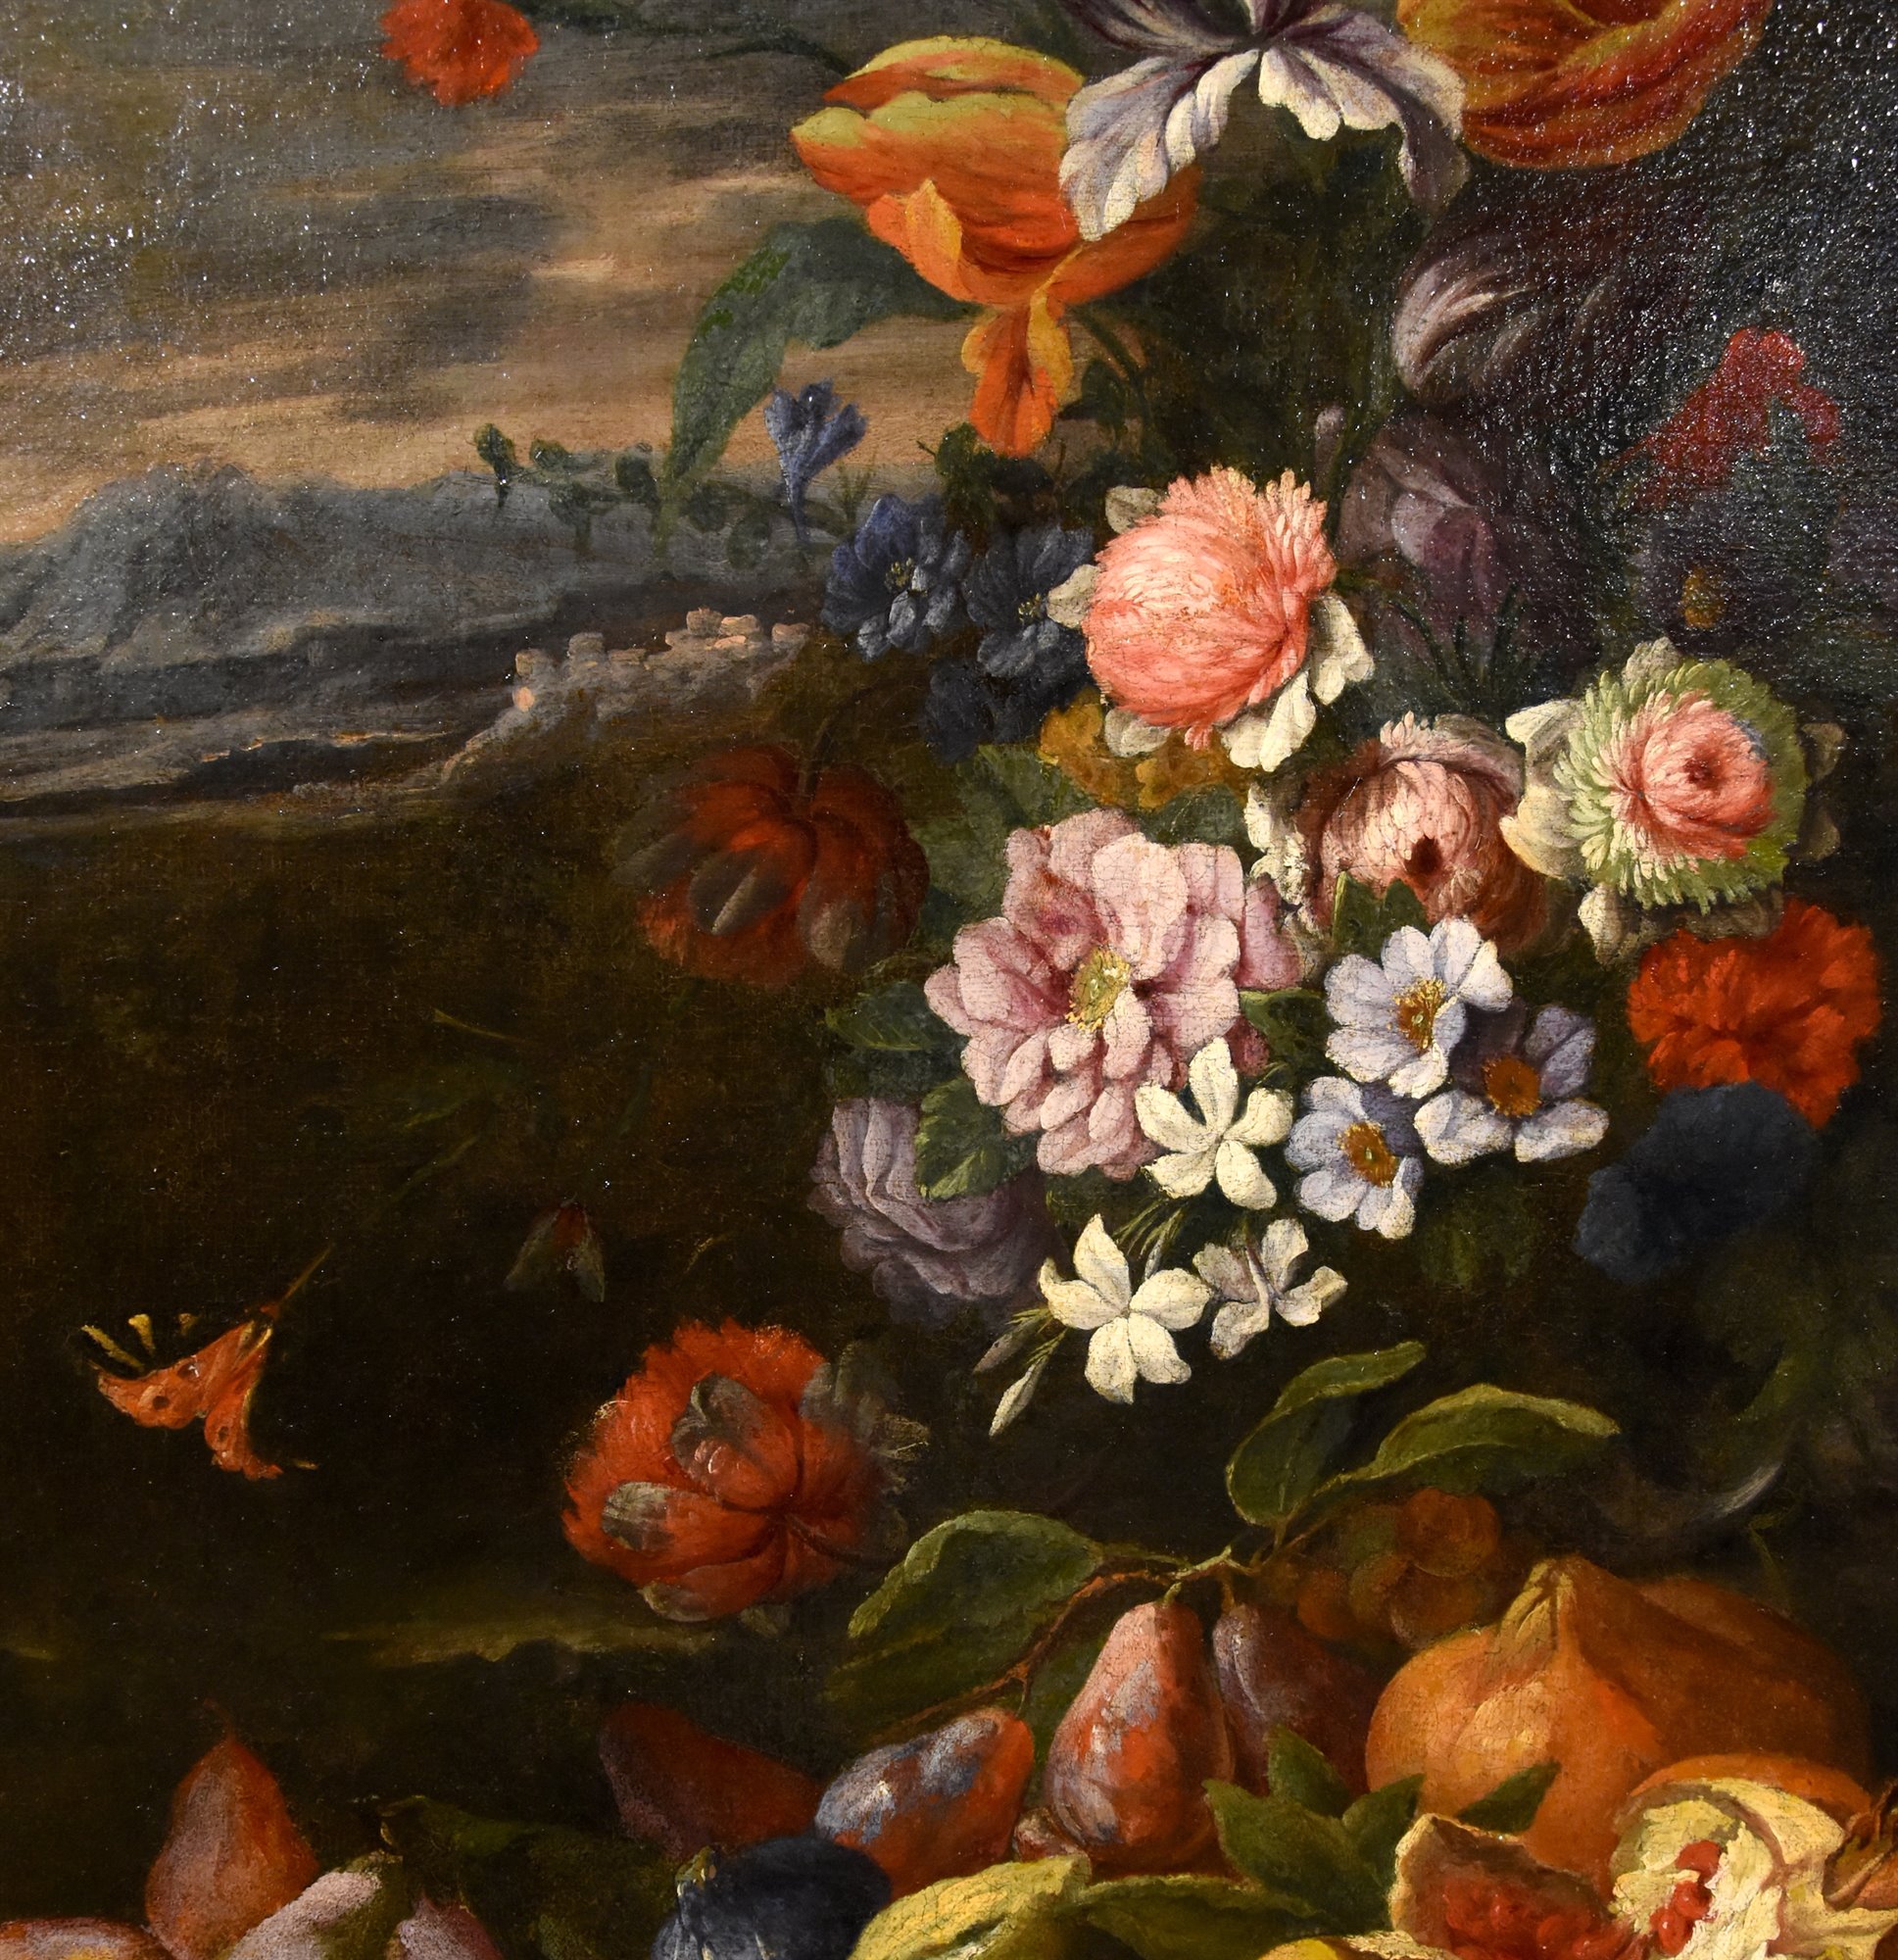 Pittore attivo a Roma nella seconda metà del Seicento - cerchia di Abraham Brueghel (1631 – 1697)